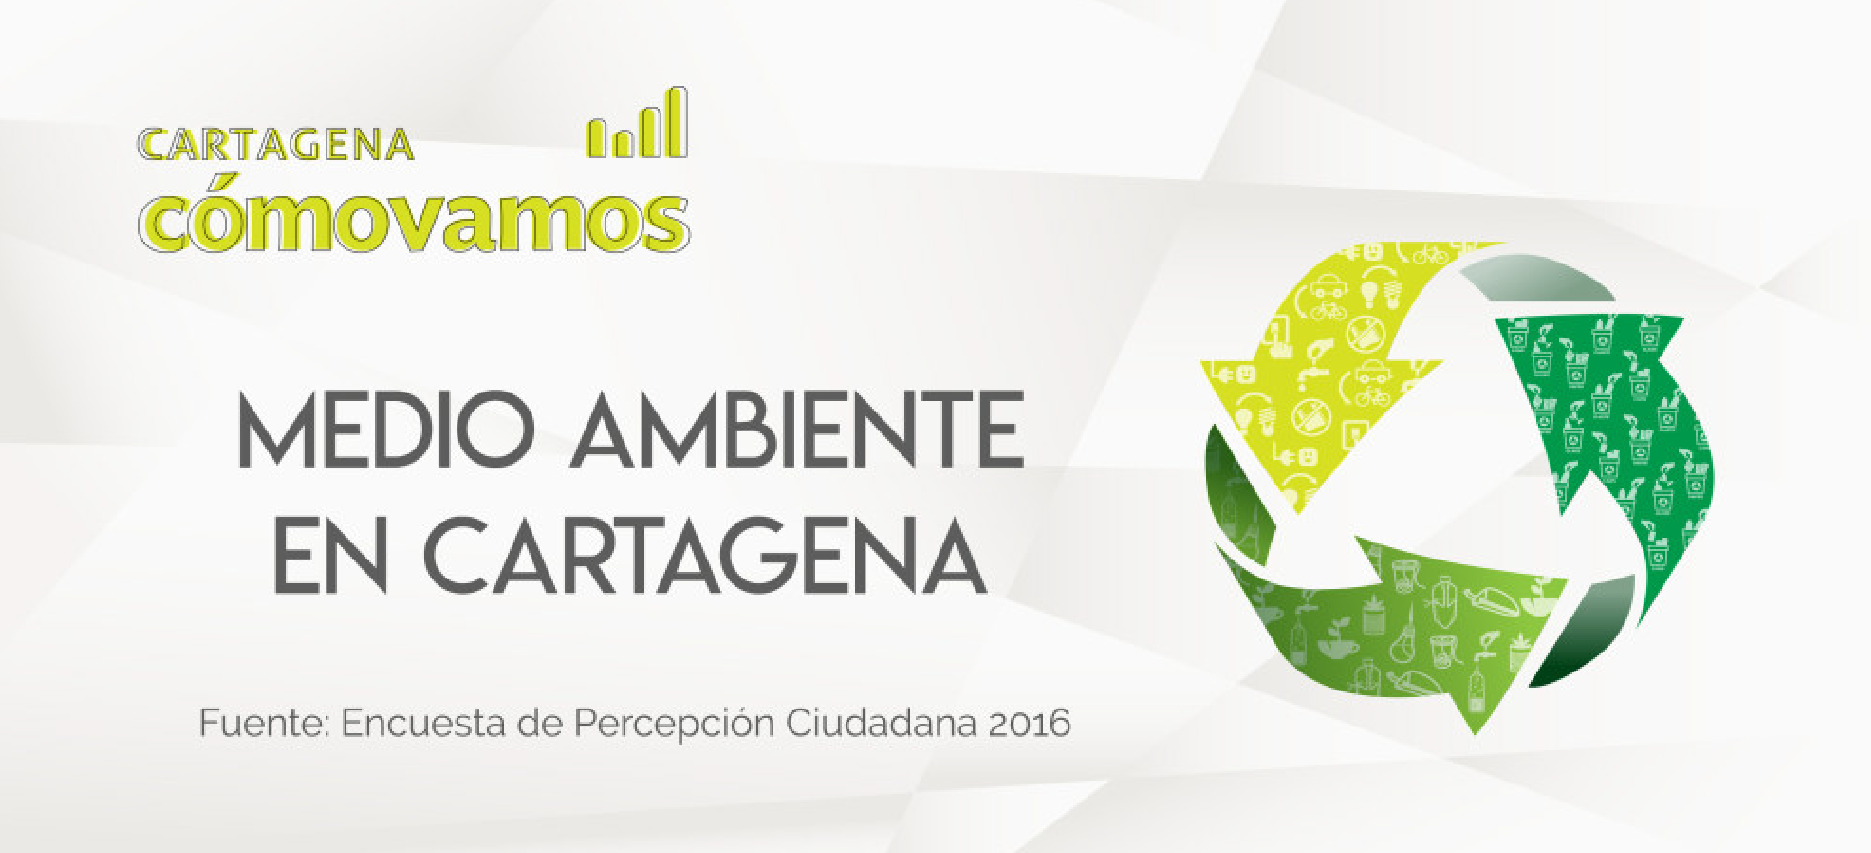 ¿Qué acciones realizas para cuidar el medio ambiente de Cartagena? | 2017